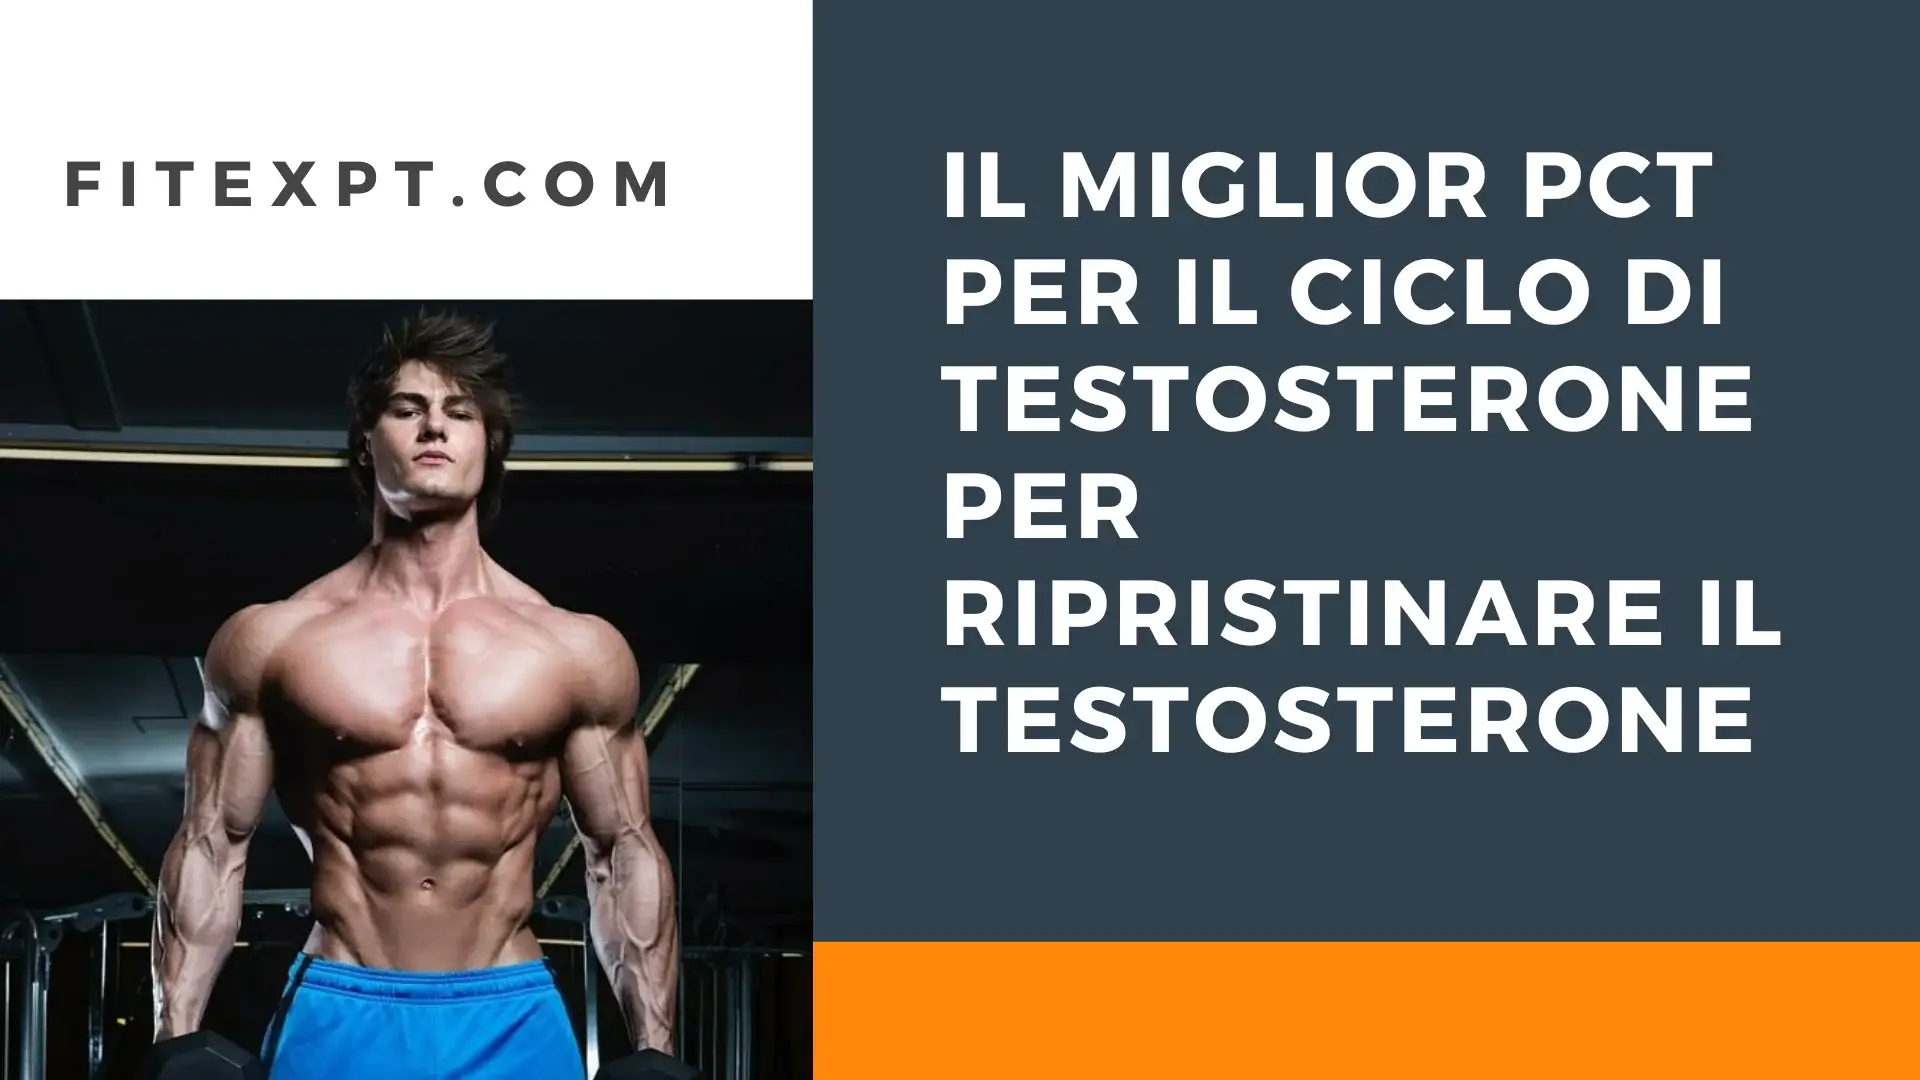 Il miglior PCT per il ciclo di testosterone per ripristinare il testosterone